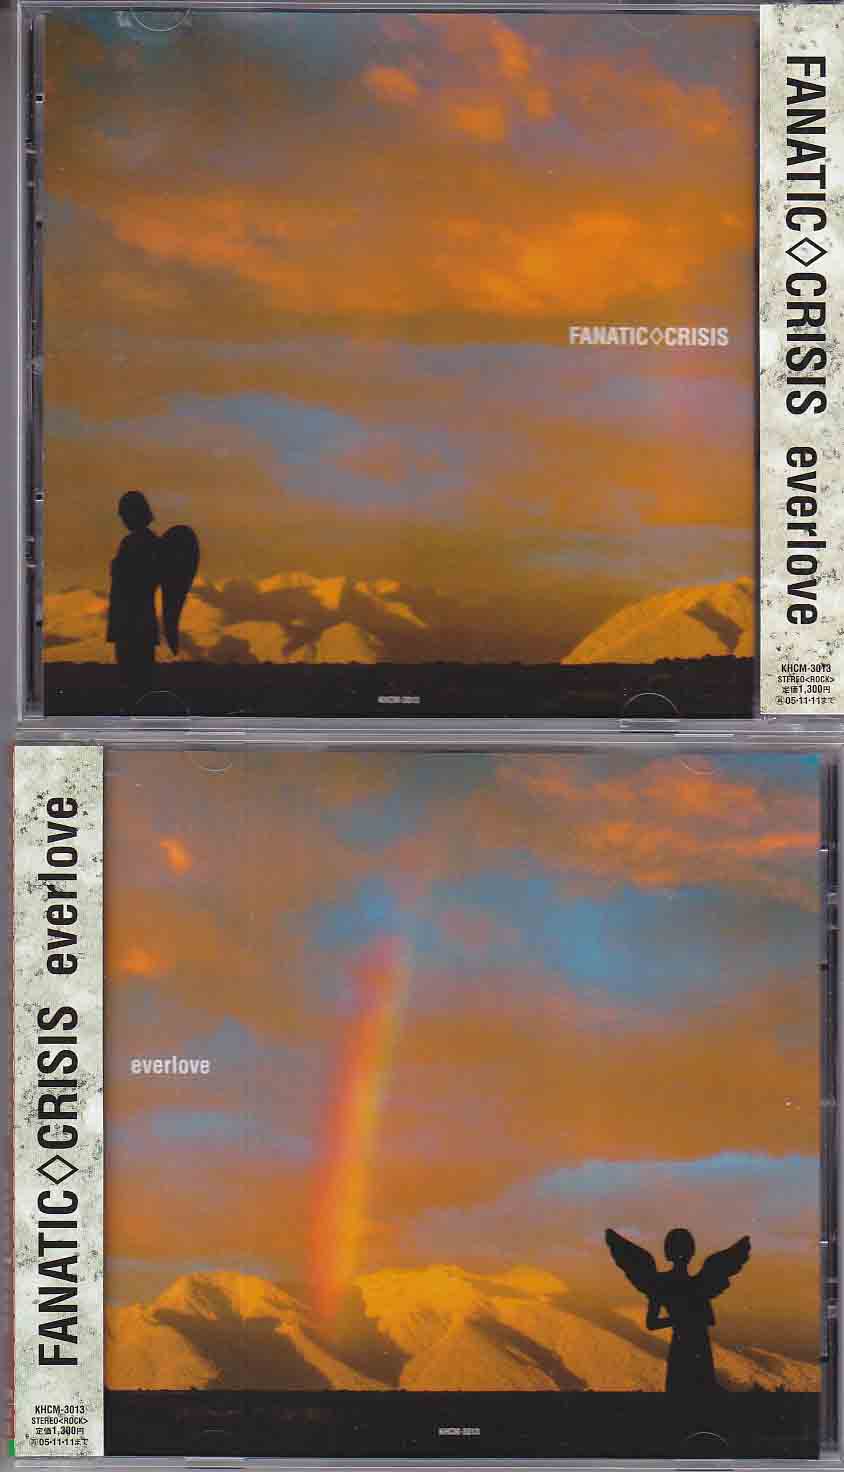 FANATIC◇CRISIS ( ファナティッククライシス )  の CD everlove